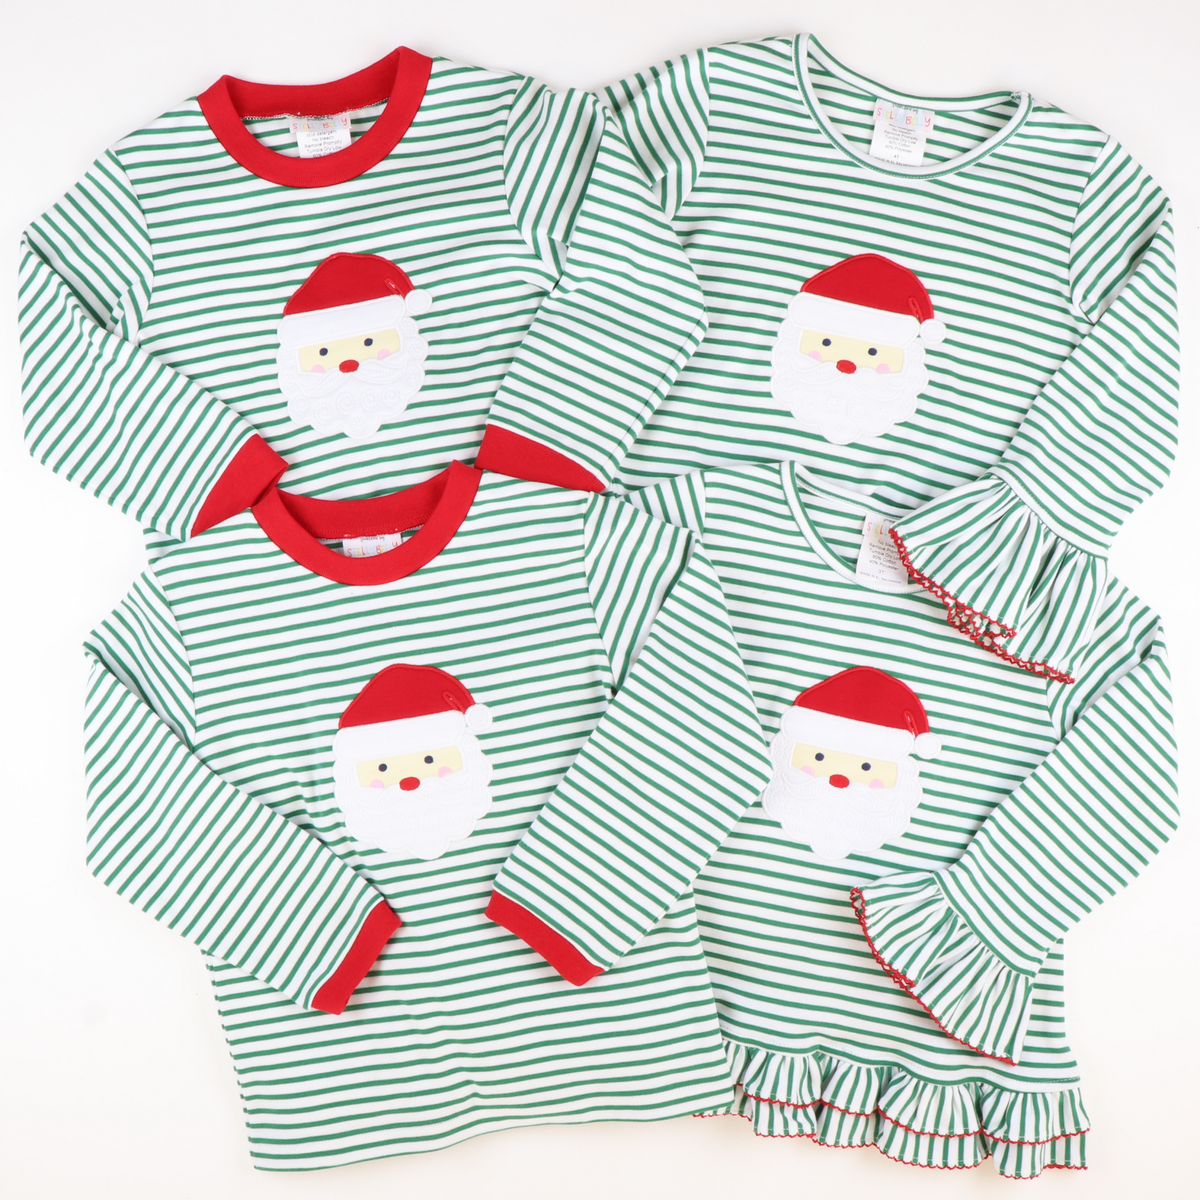 Appliquéd Santa Face Boy Long Bubble - Christmas Green Stripe Knit